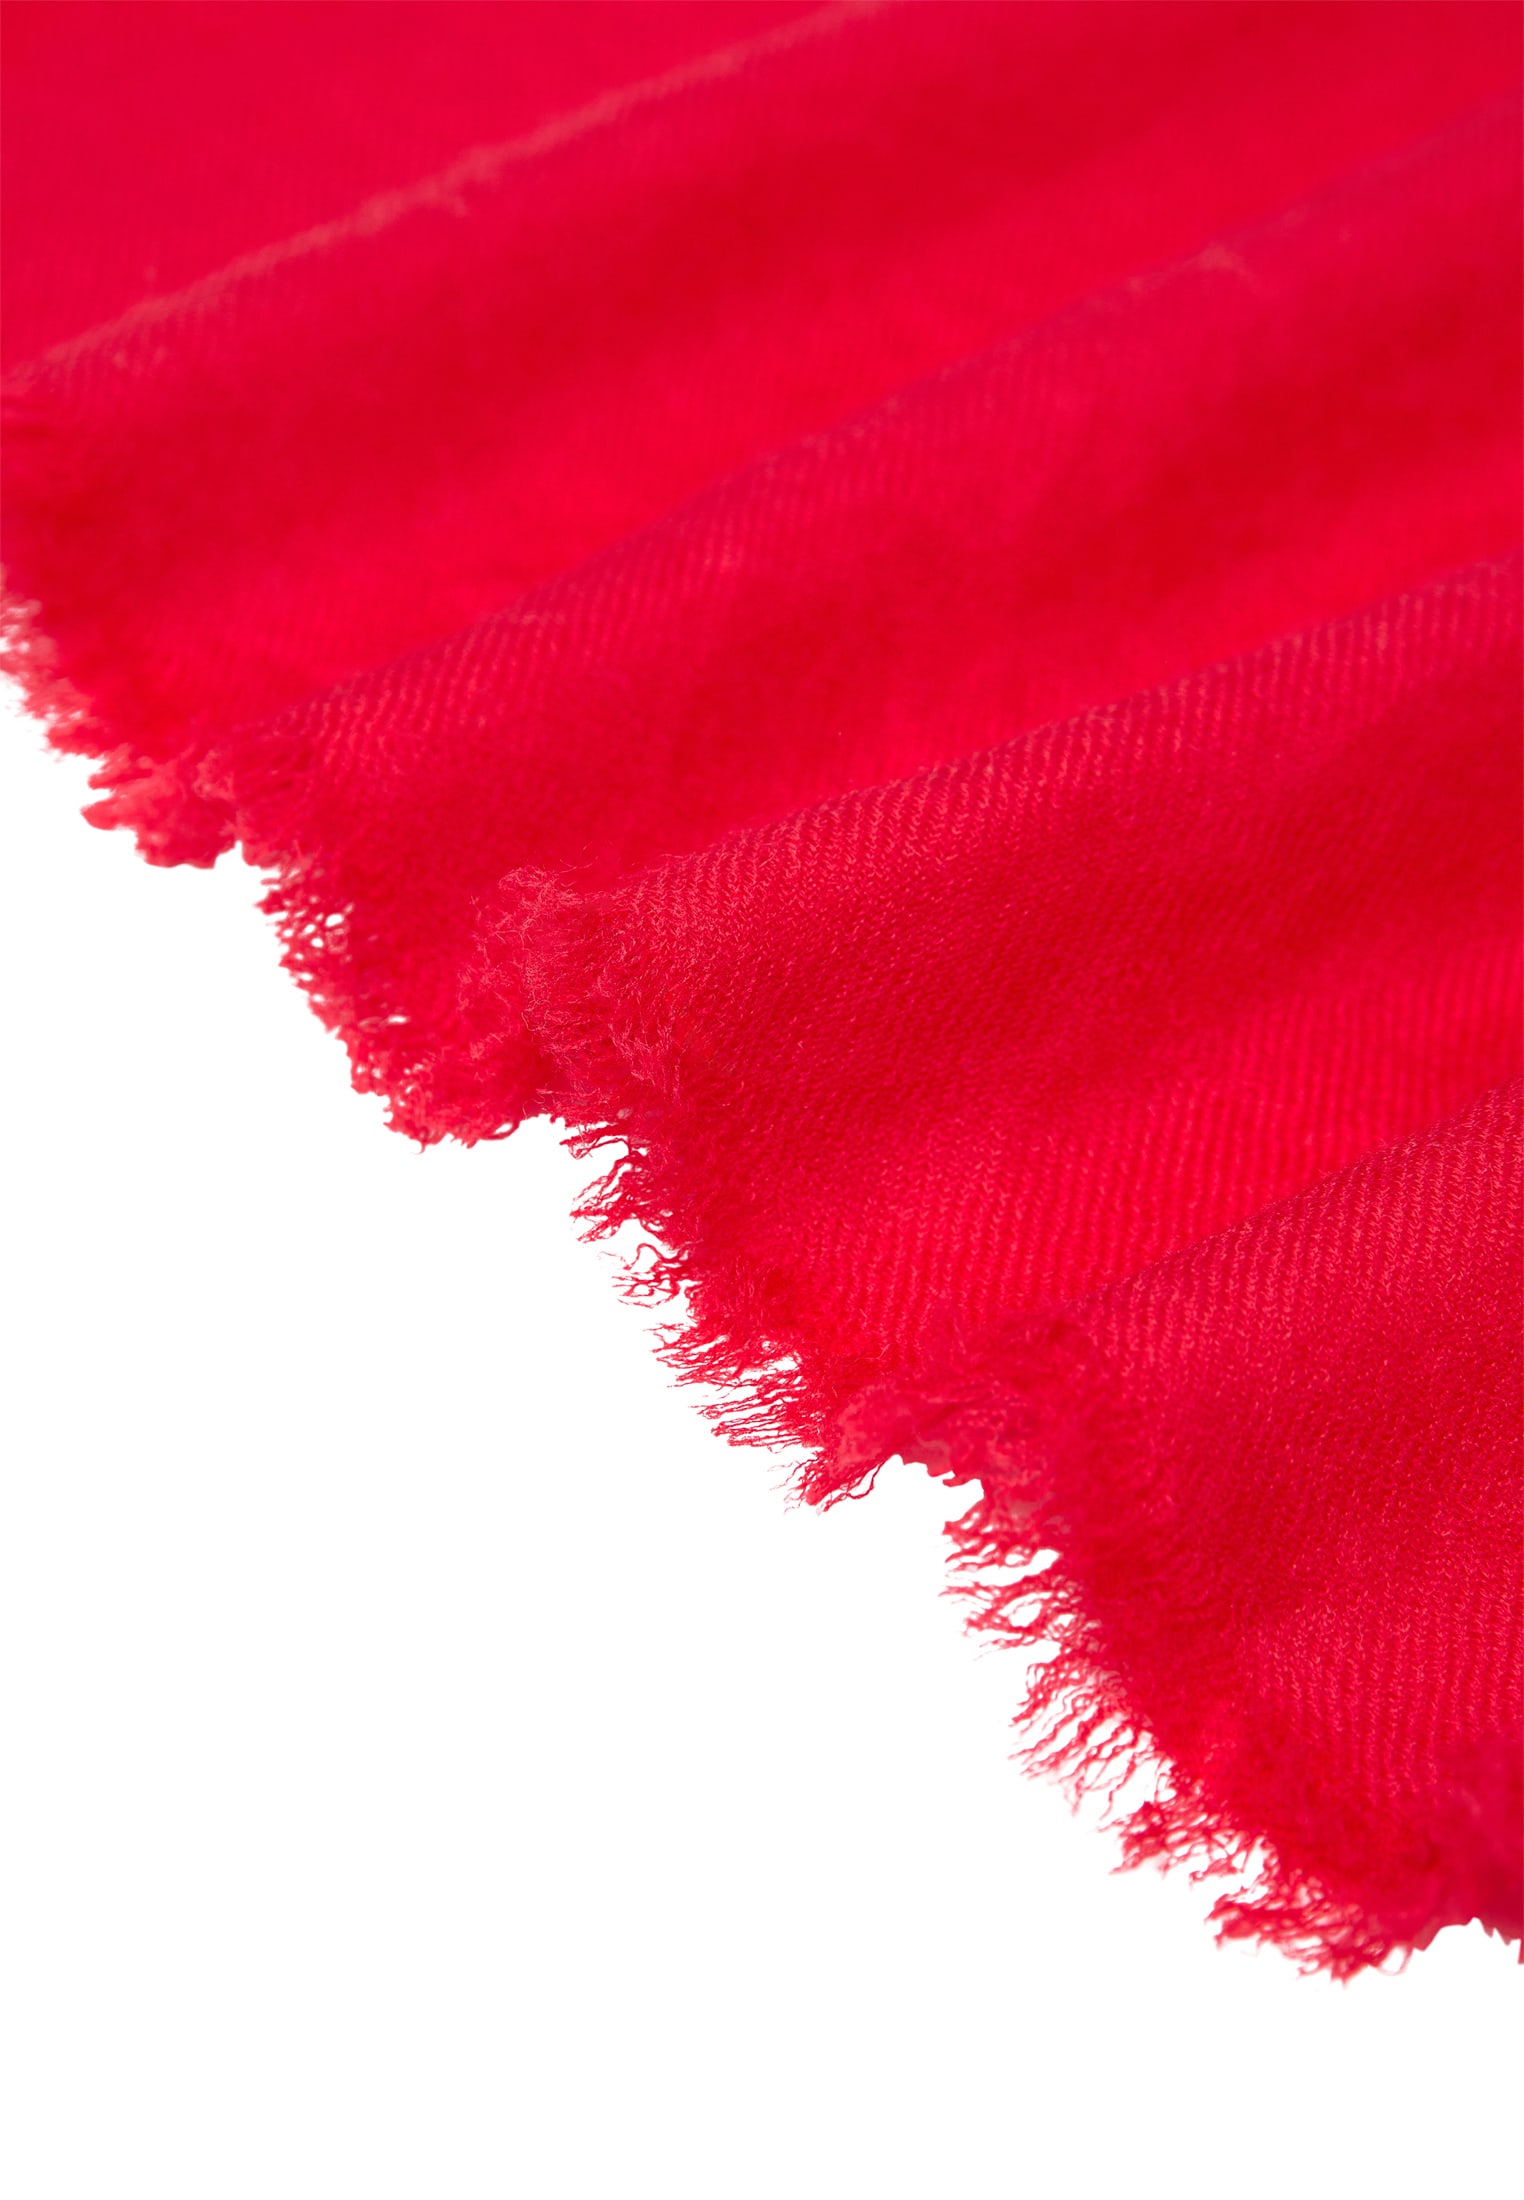 Sjaal in rood vlakte